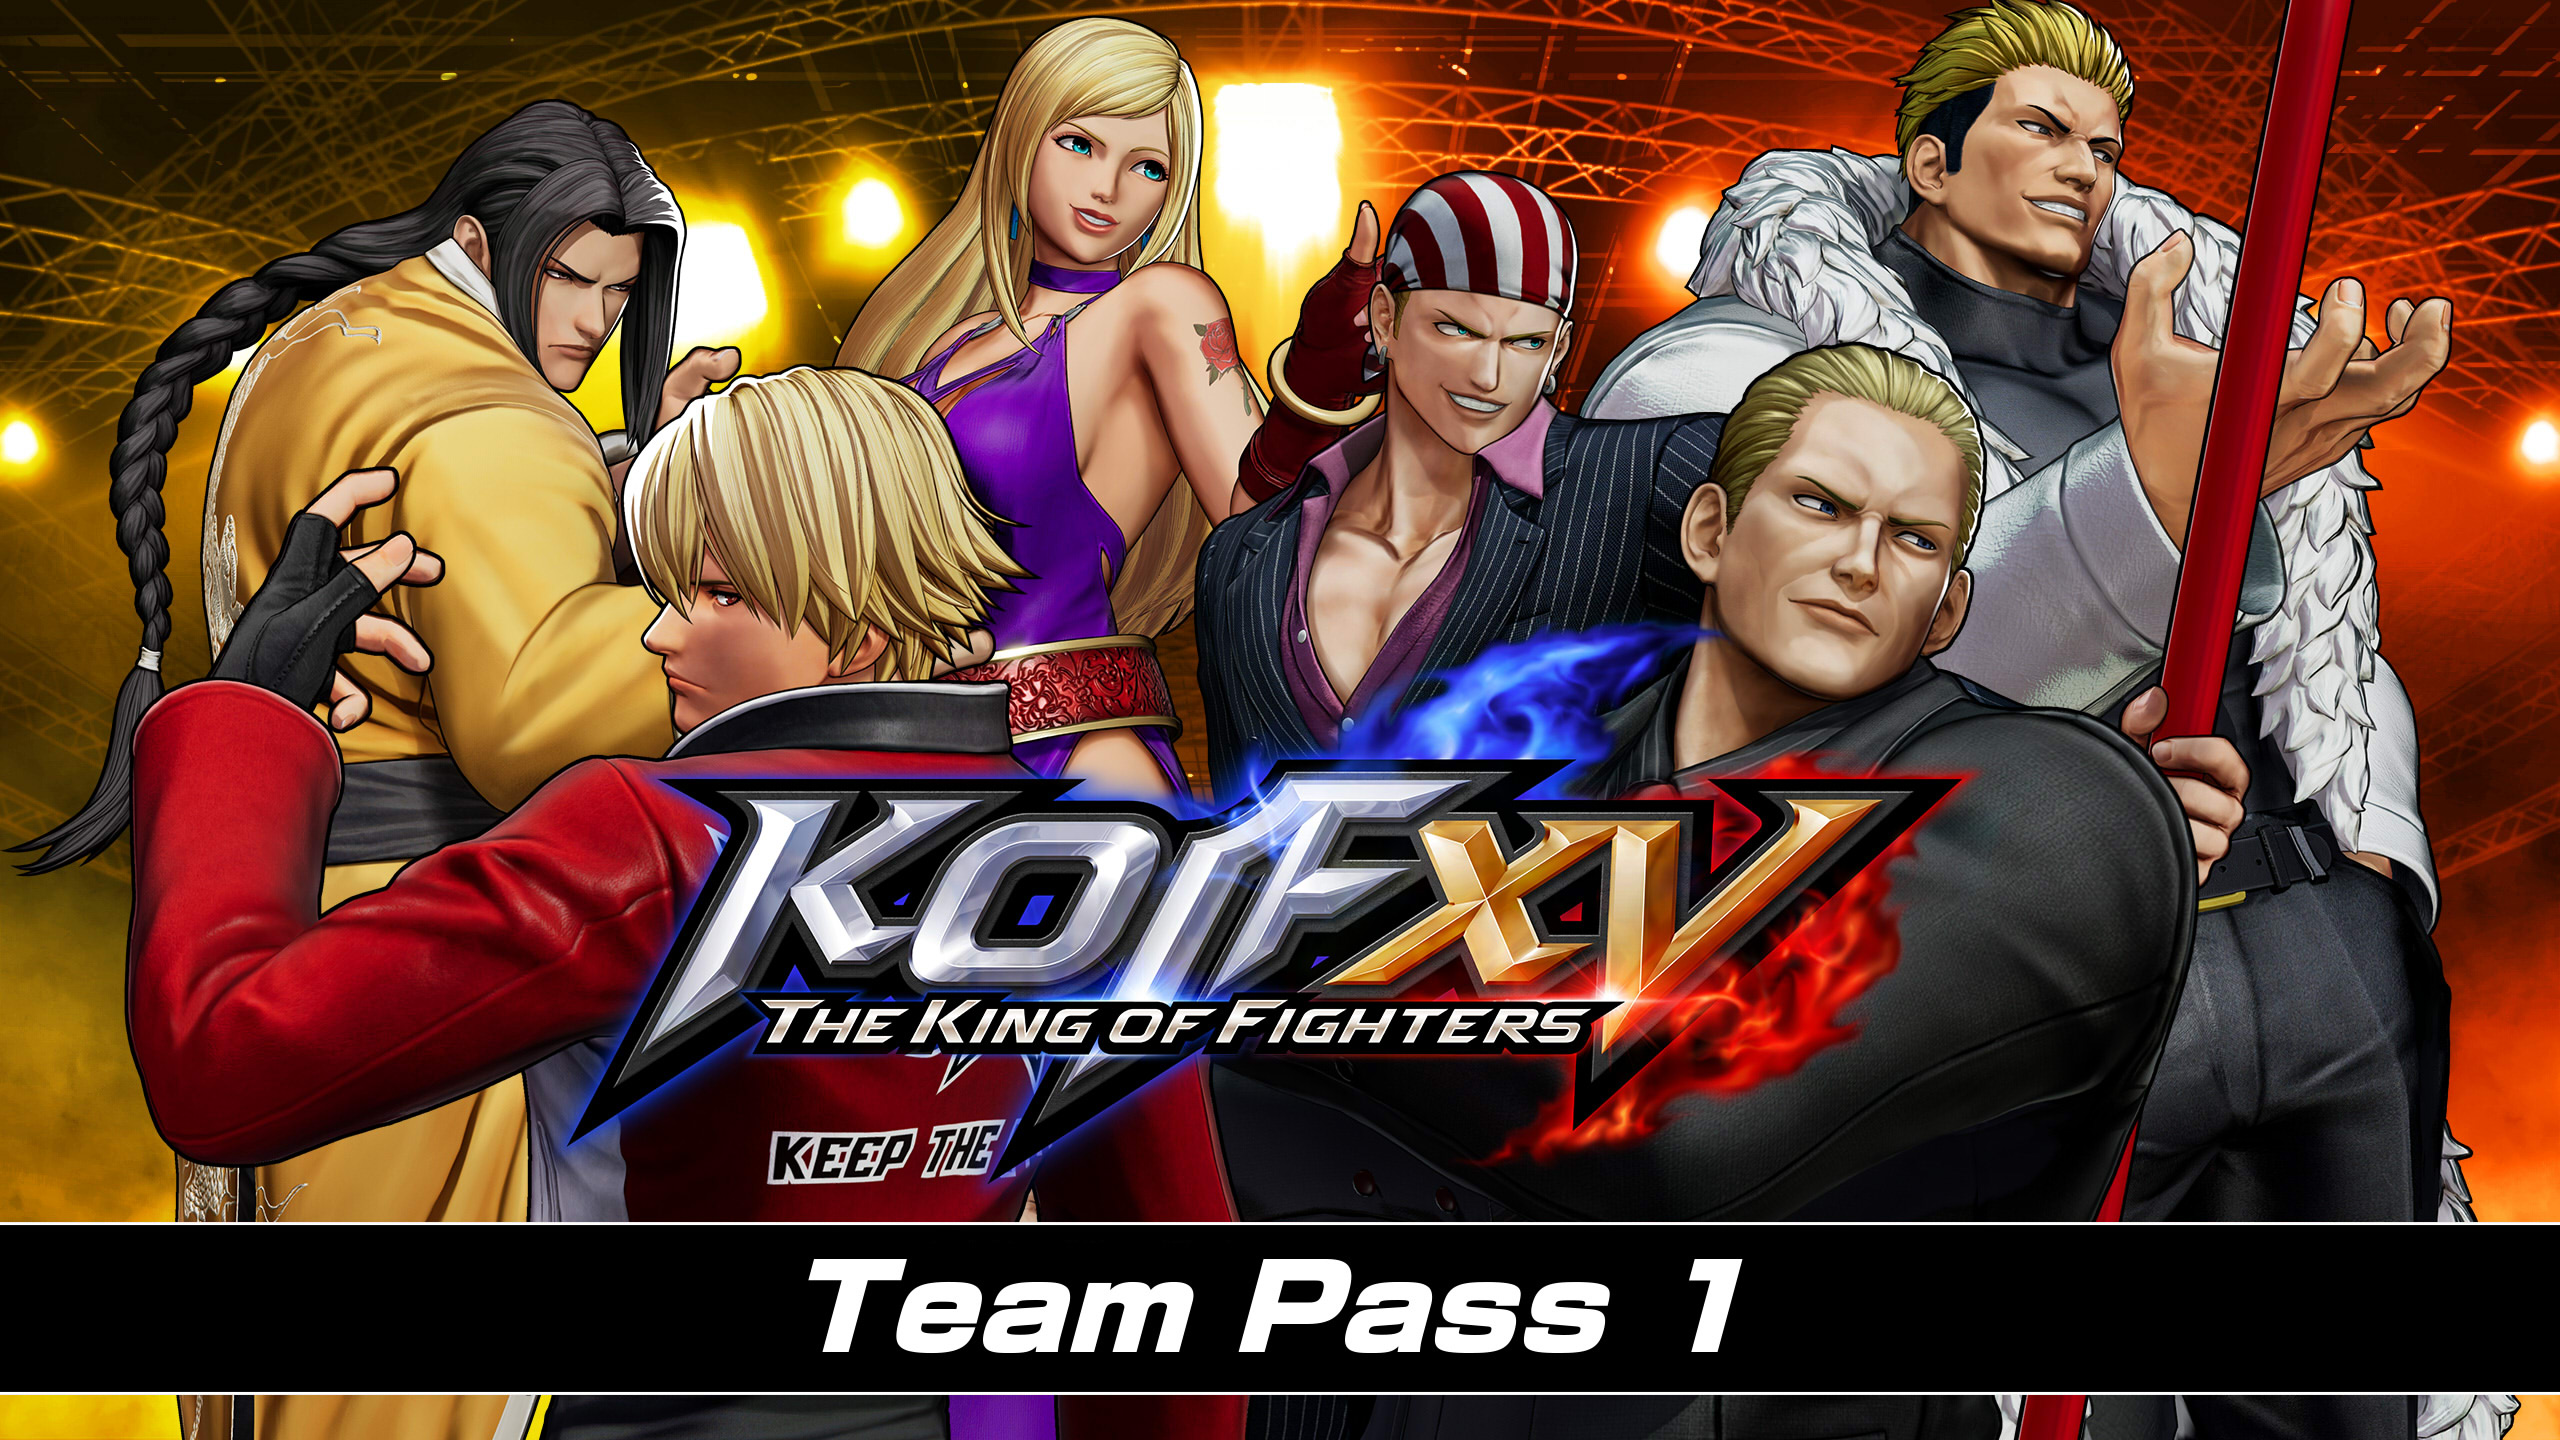 THE KING OF FIGHTERS XV - Team Pass 1 DLC EU PS4 CD Key 25.98 $